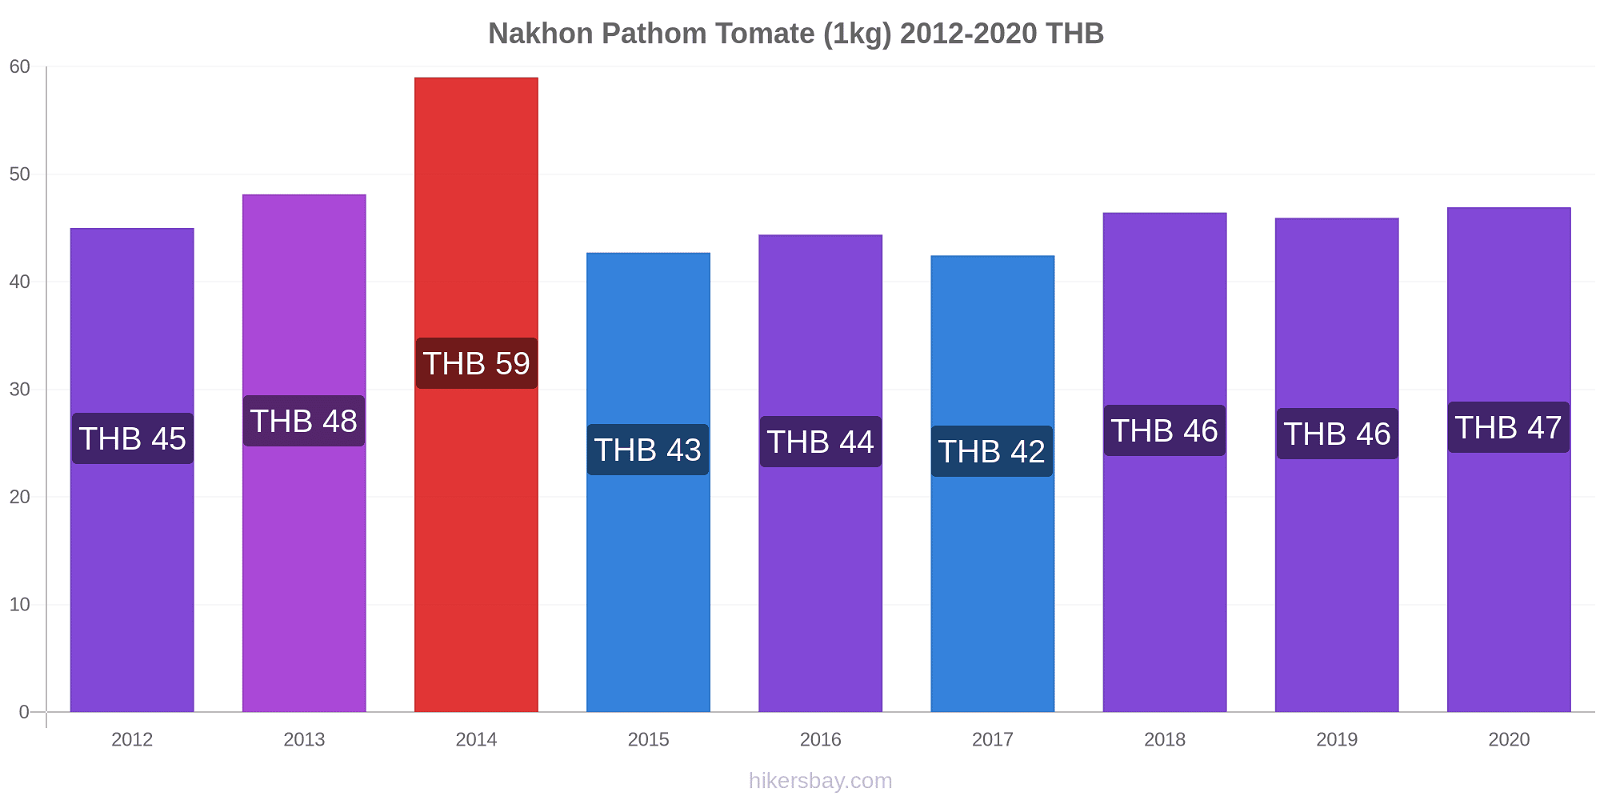 Nakhon Pathom variação de preço Tomate (1kg) hikersbay.com